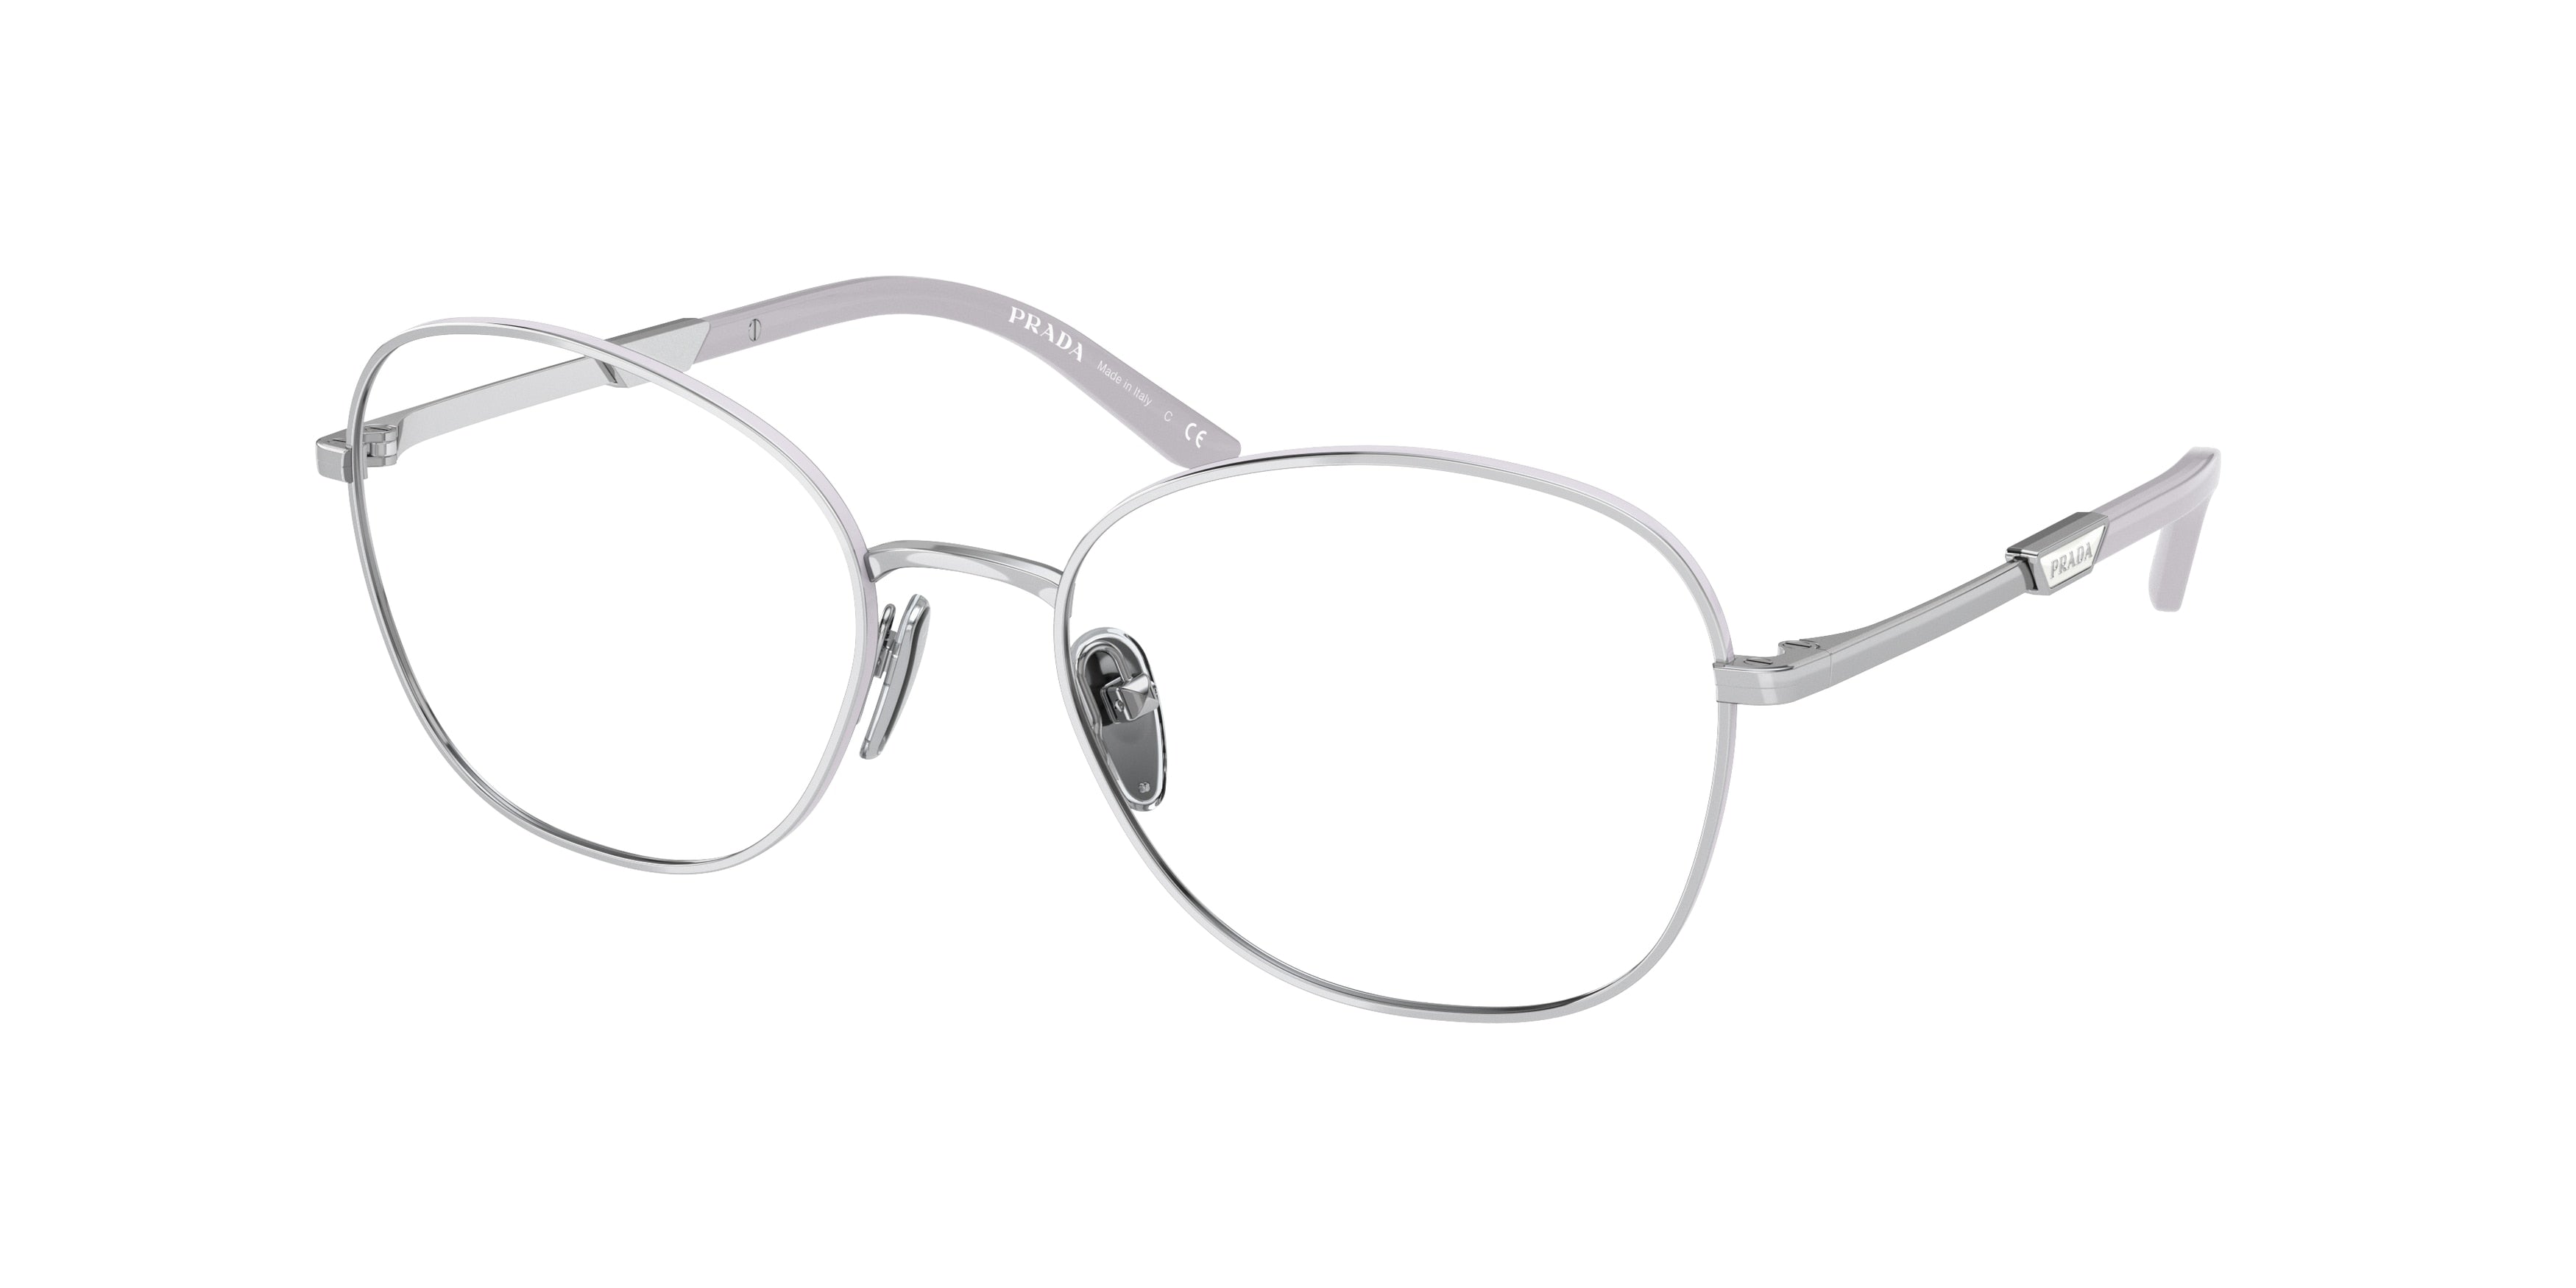 Prada PR64YV Round Eyeglasses  15A1O1-Silver/Wisteria 54-135-18 - Color Map Silver